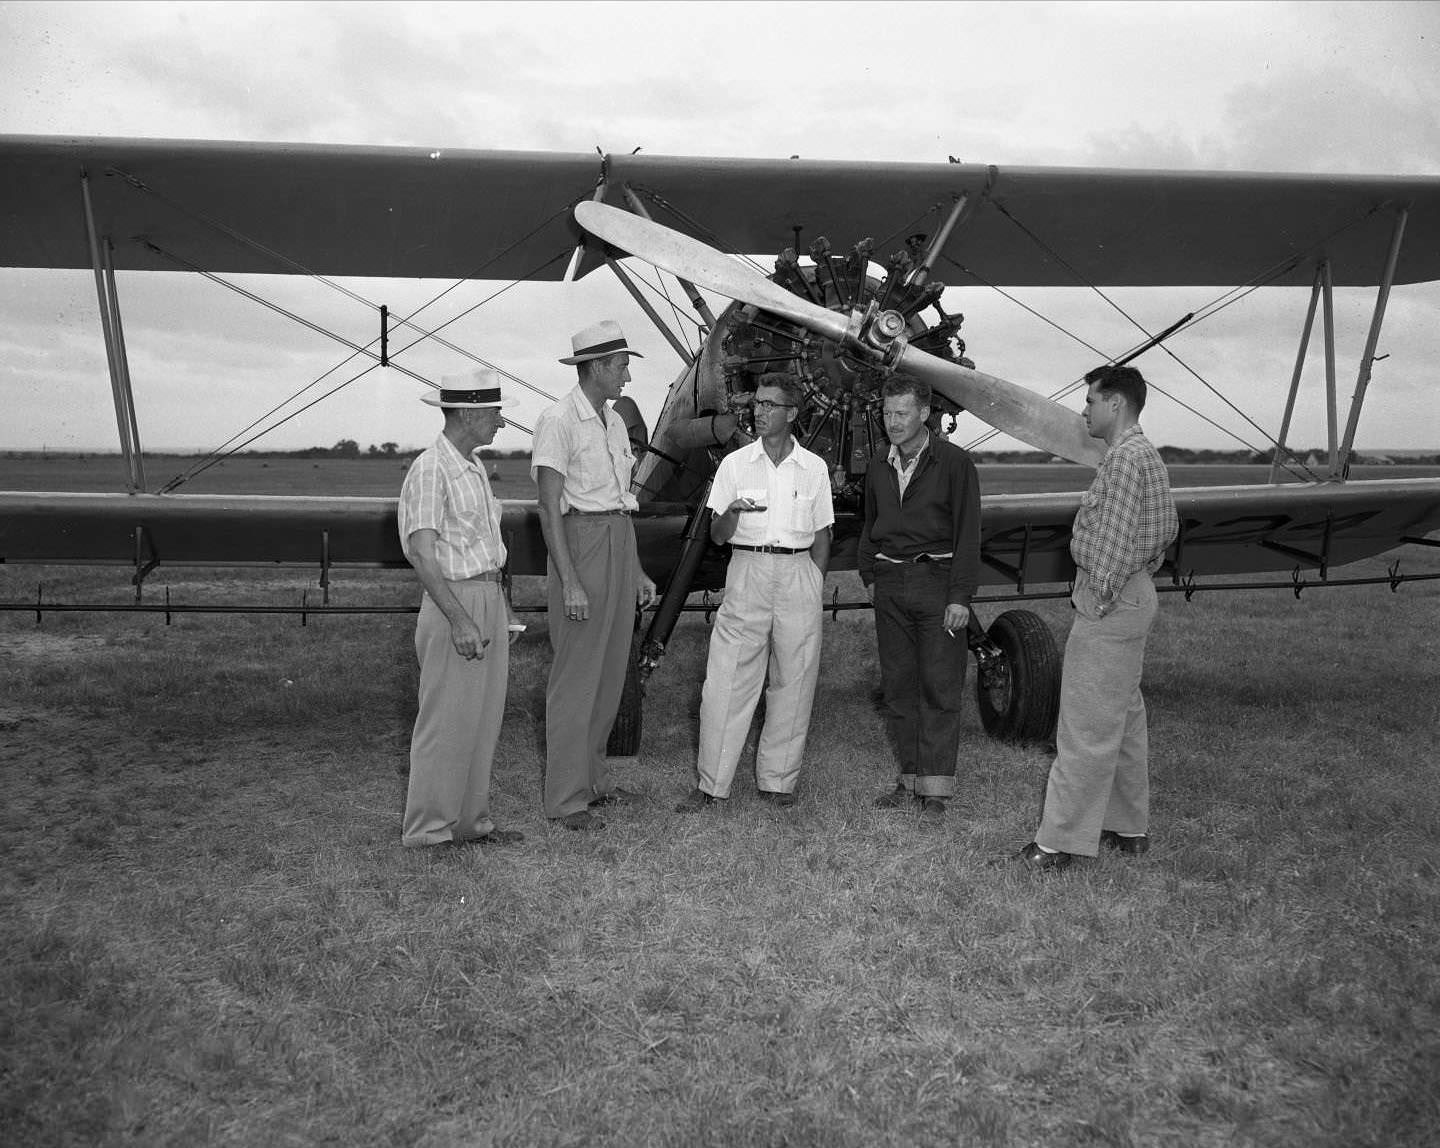 Five men standing in front of prop plane, 1954